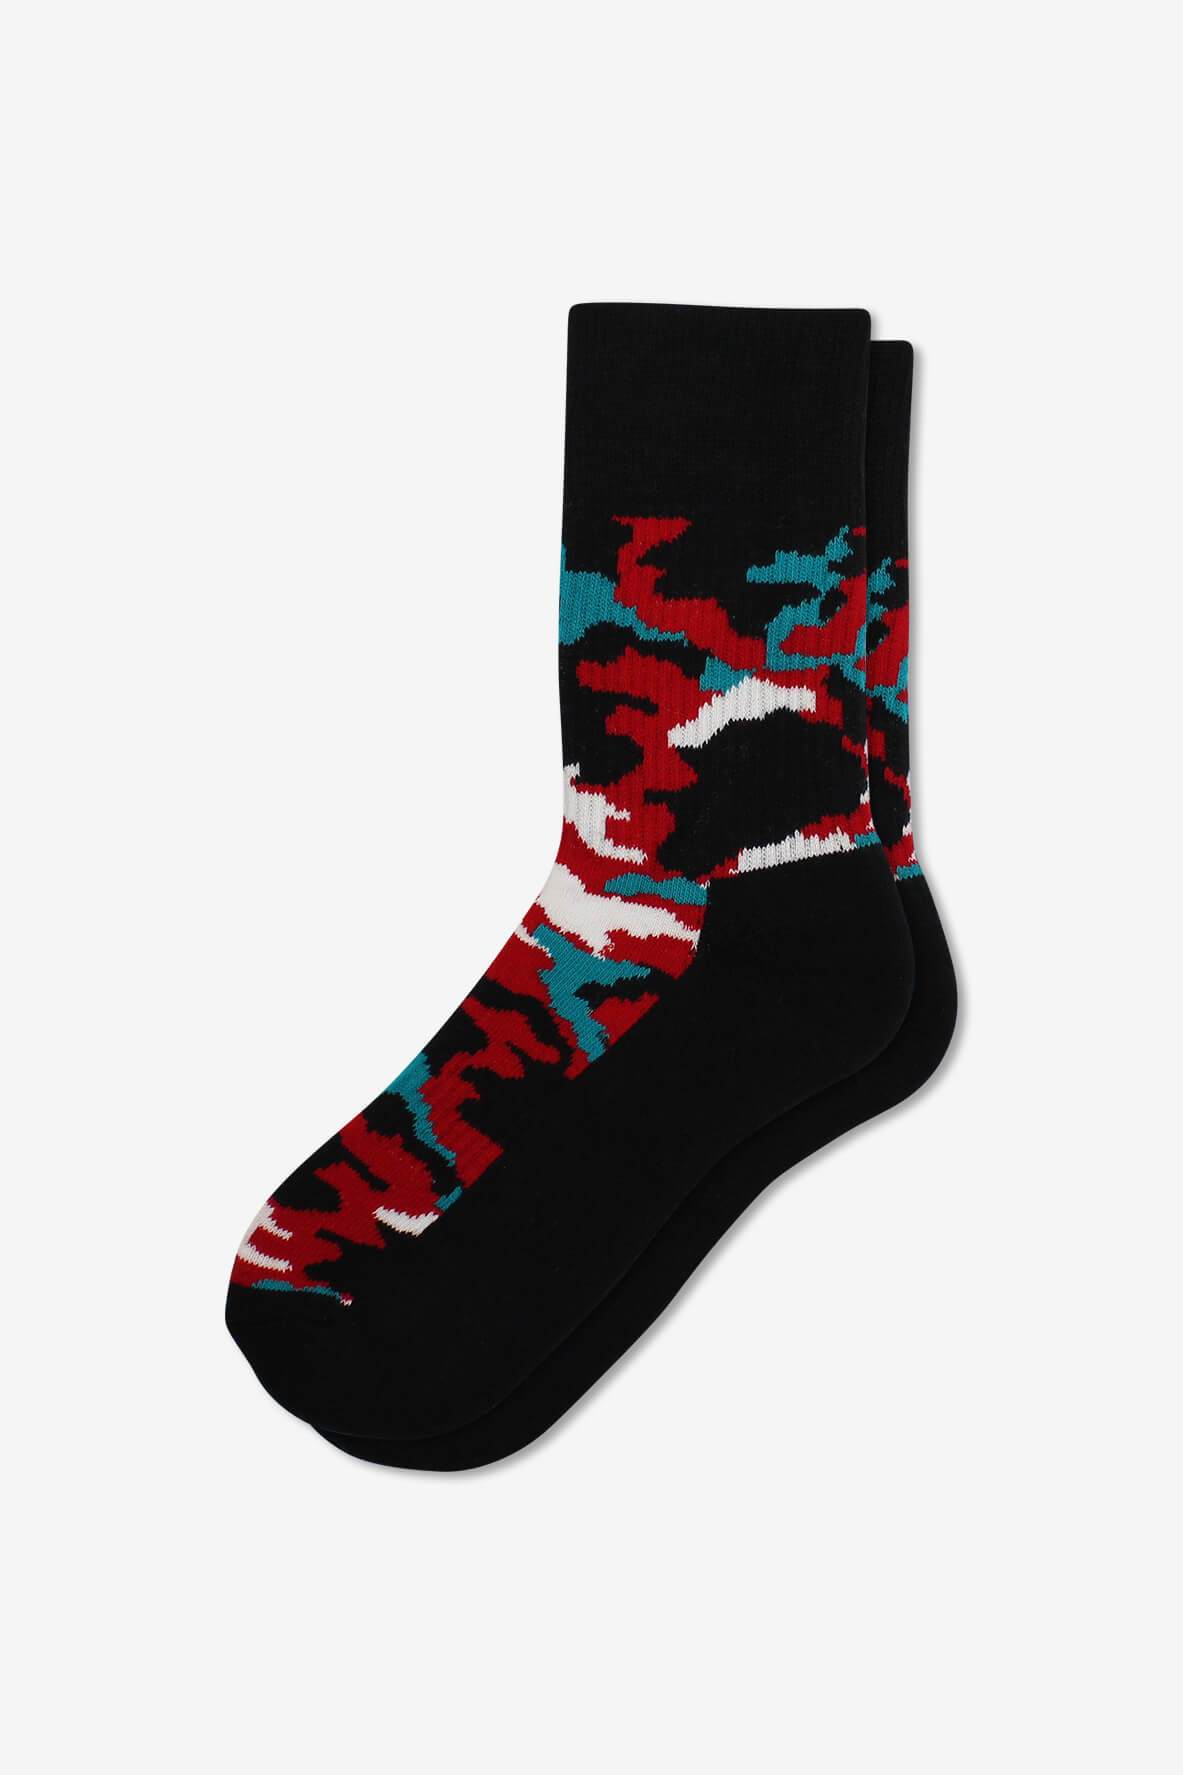 Socks IMG_5381, socks, GoTie